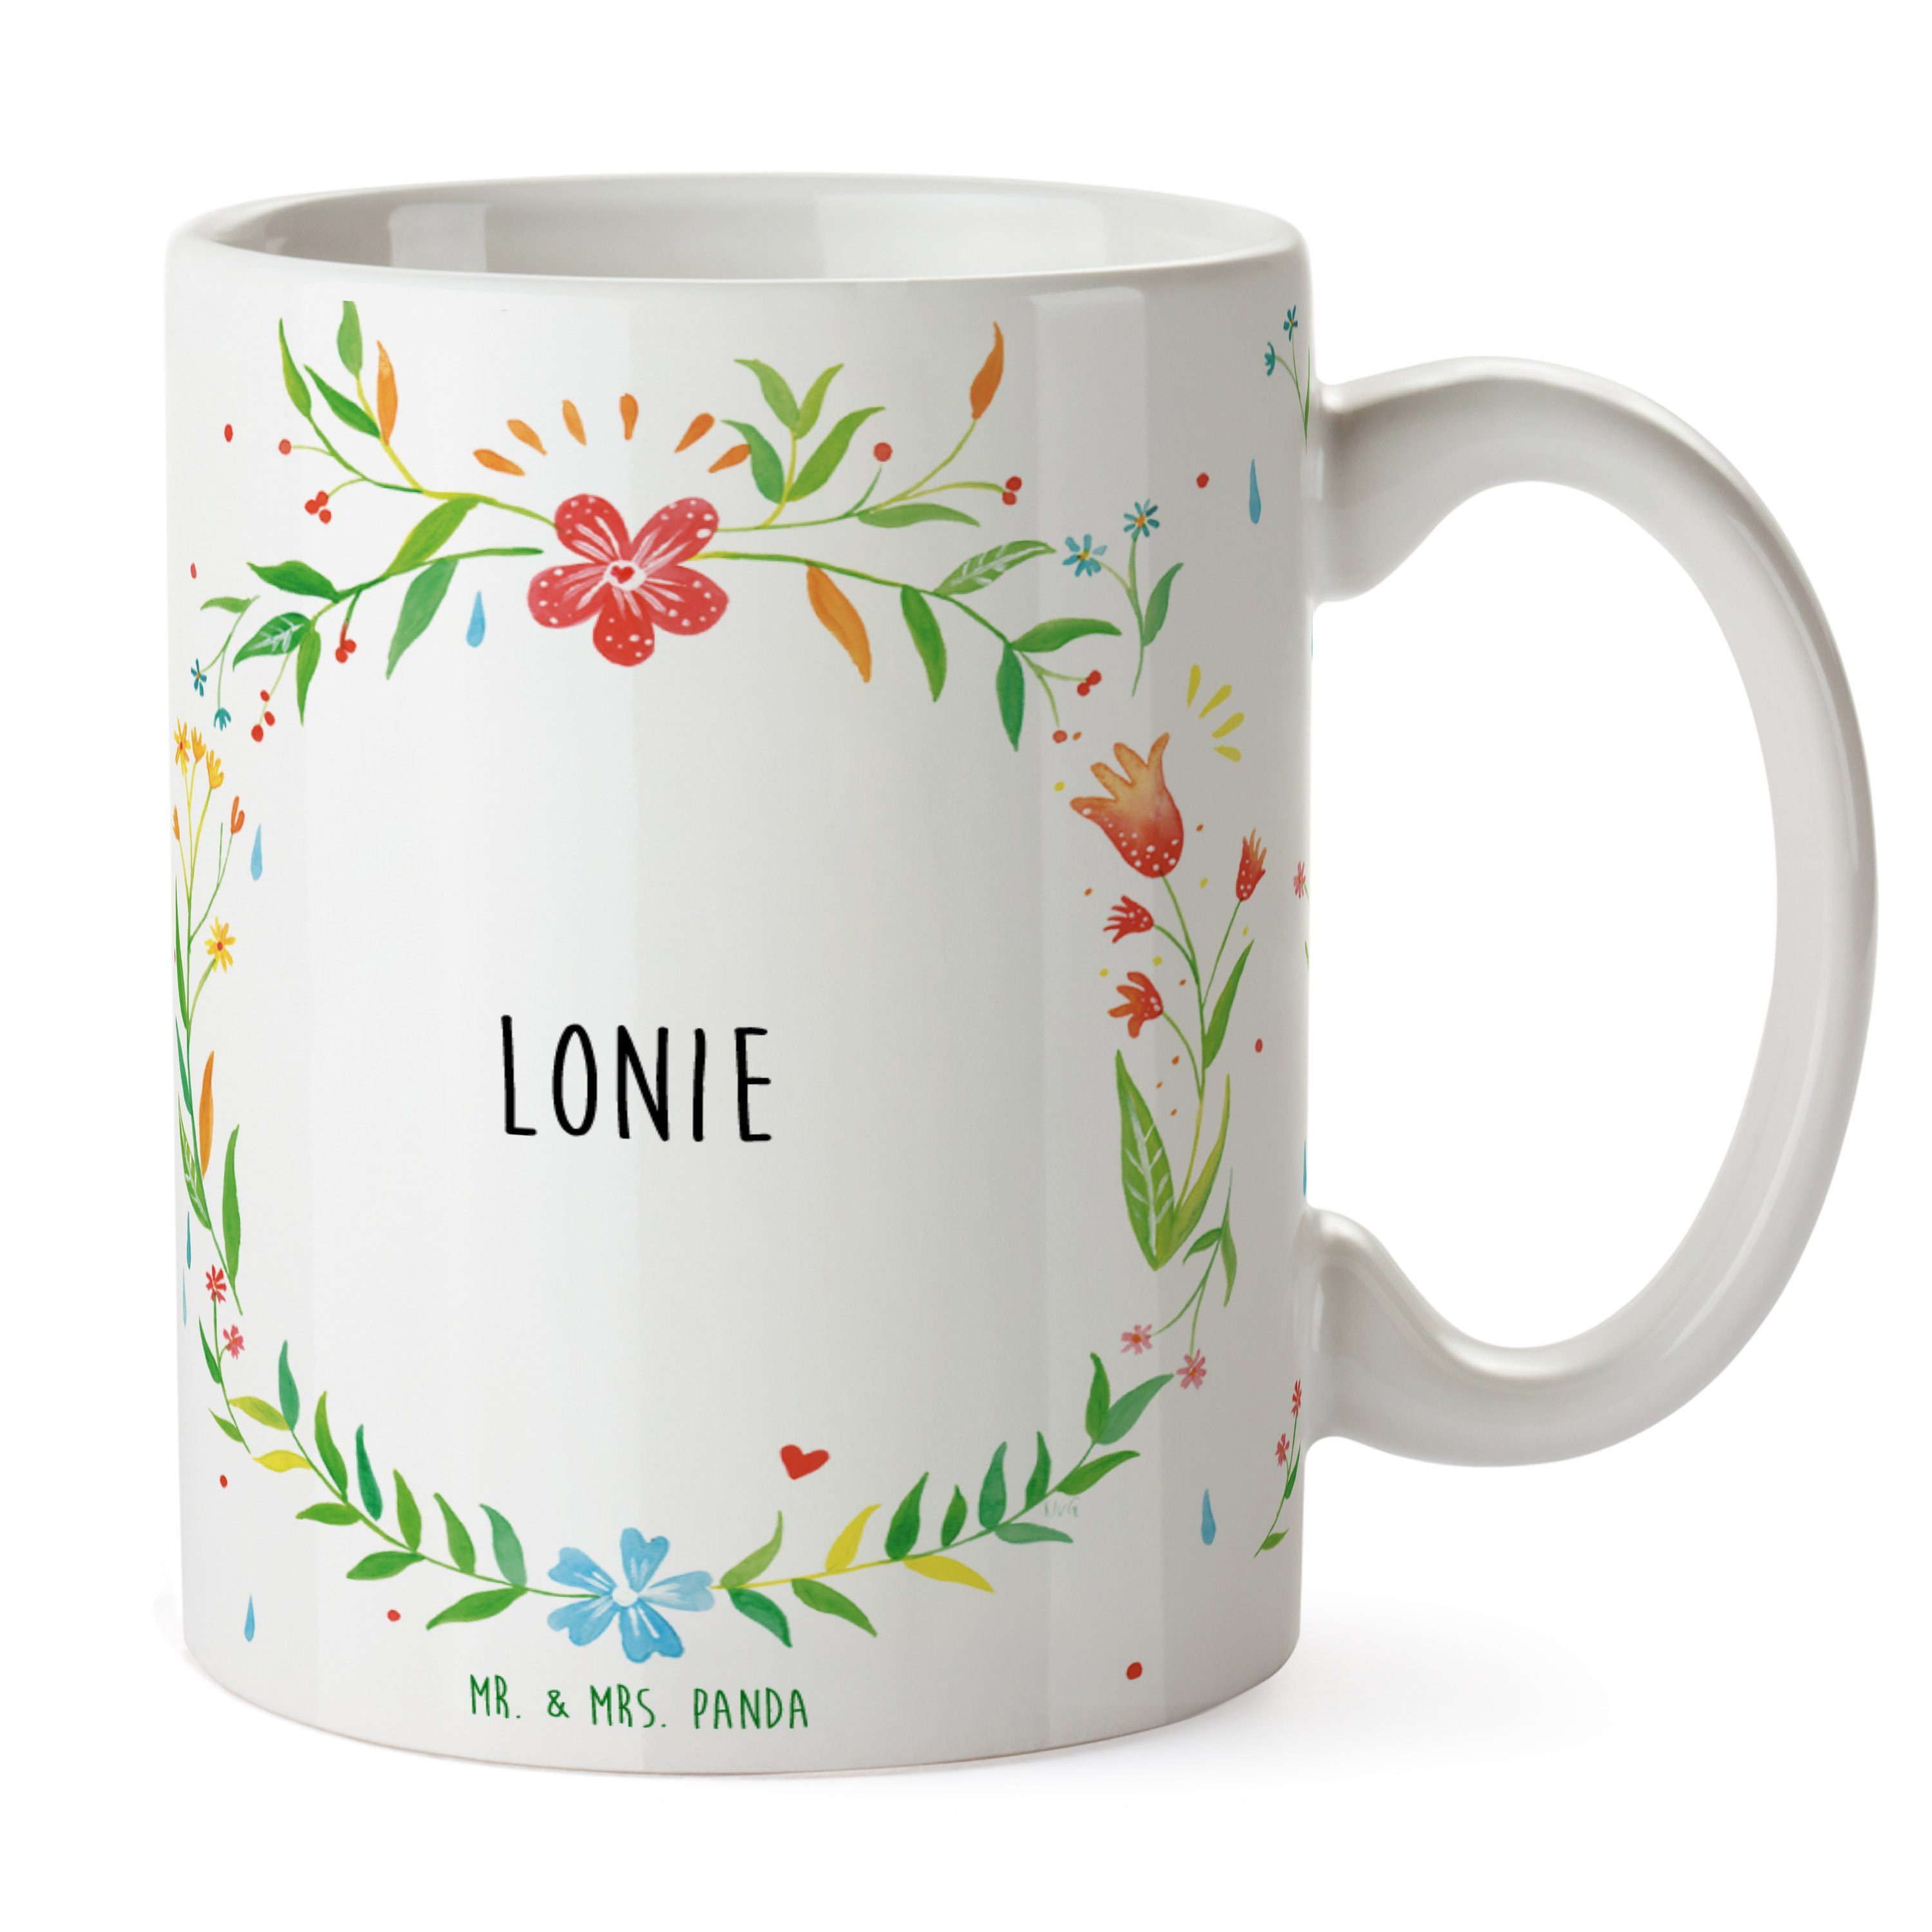 Mr. & Mrs. Panda Lonie Tasse Tasse Keramik Geschenk, - Motive, Kaffeetasse, Kaffeebec, Tasse Sprüche